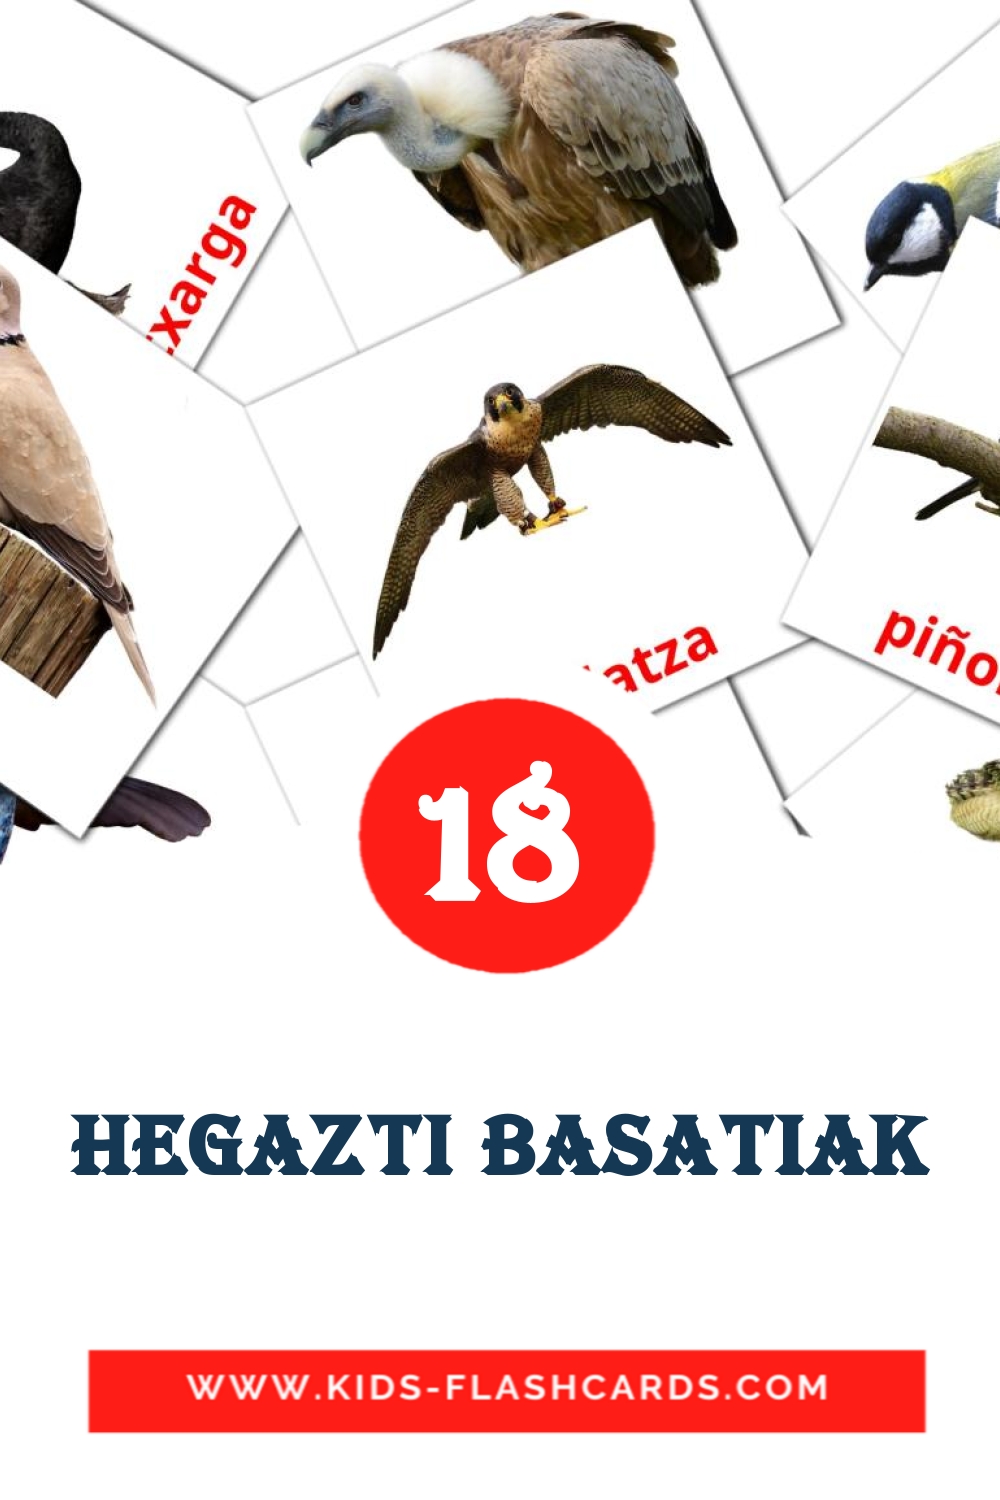 18 Cartões com Imagens de Hegazti basatiak para Jardim de Infância em basco